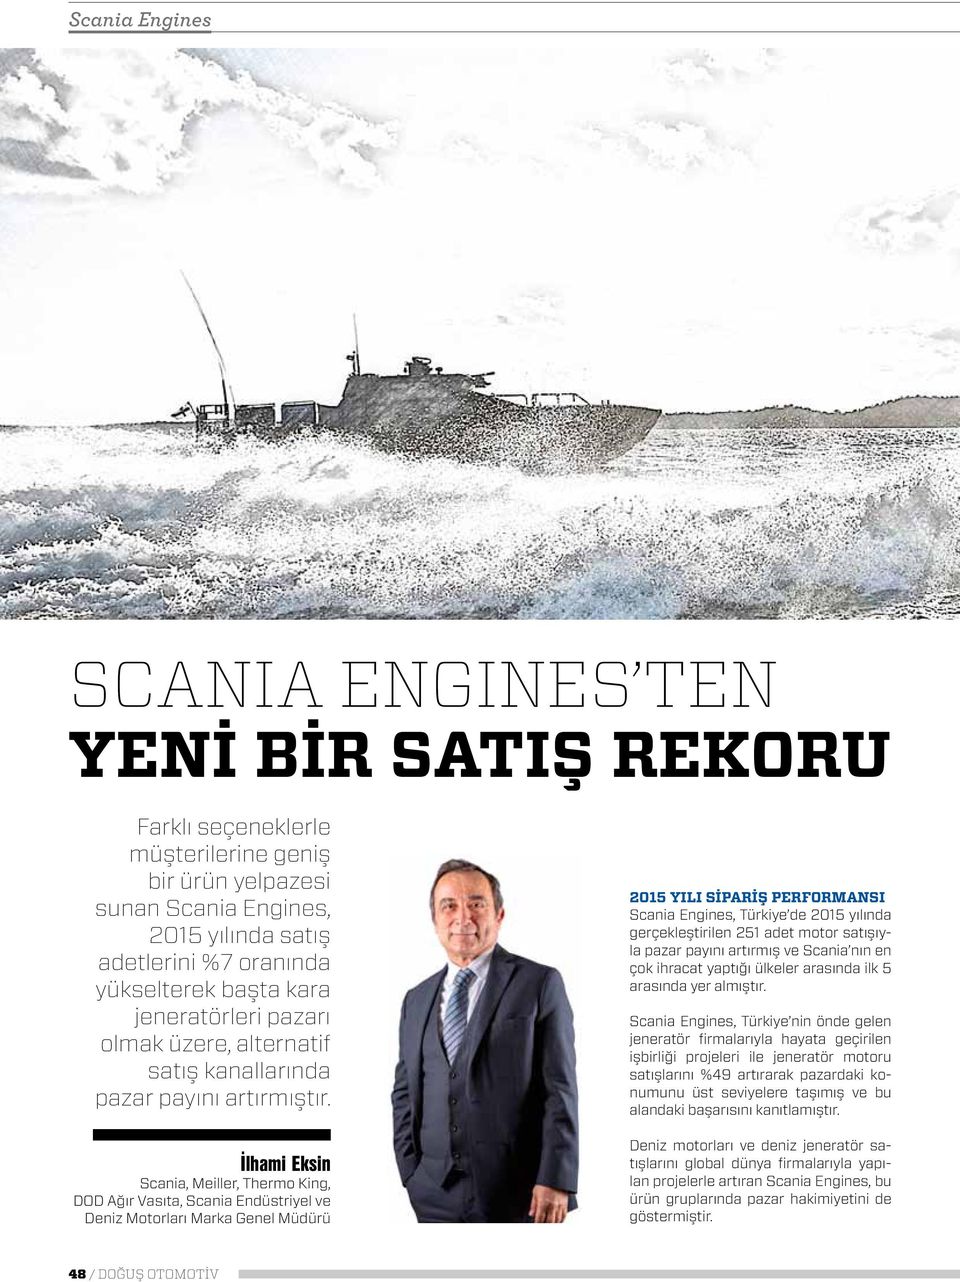 İlhami Eksin Scania, Meiller, Thermo King, DOD Ağır Vasıta, Scania Endüstriyel ve Deniz Motorları Marka Genel Müdürü 2015 yılı sipariş performansı Scania Engines, Türkiye de 2015 yılında